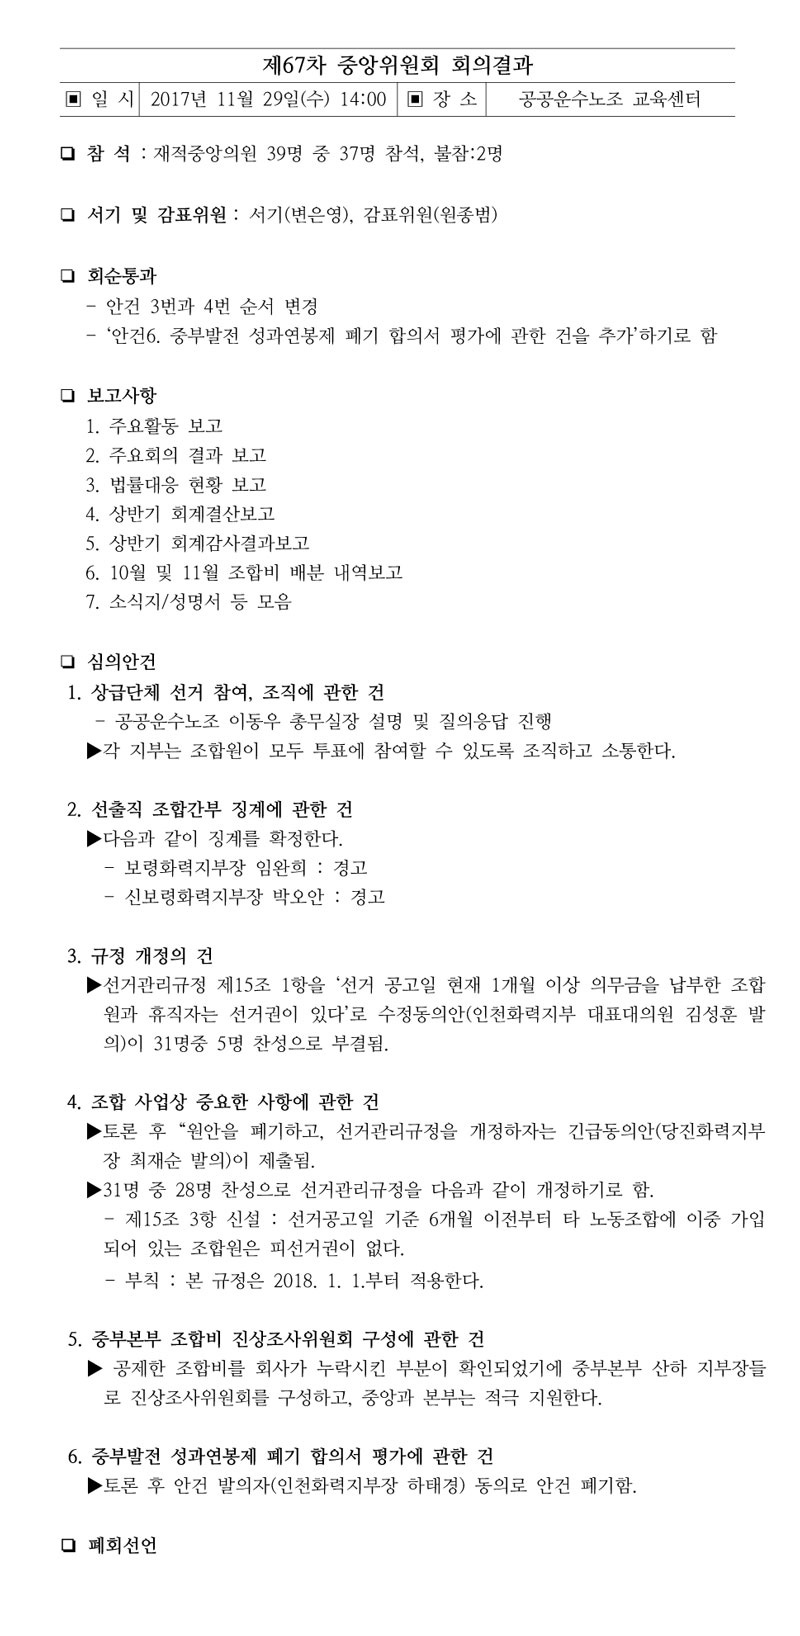 제67차-중앙위원회결과.jpg